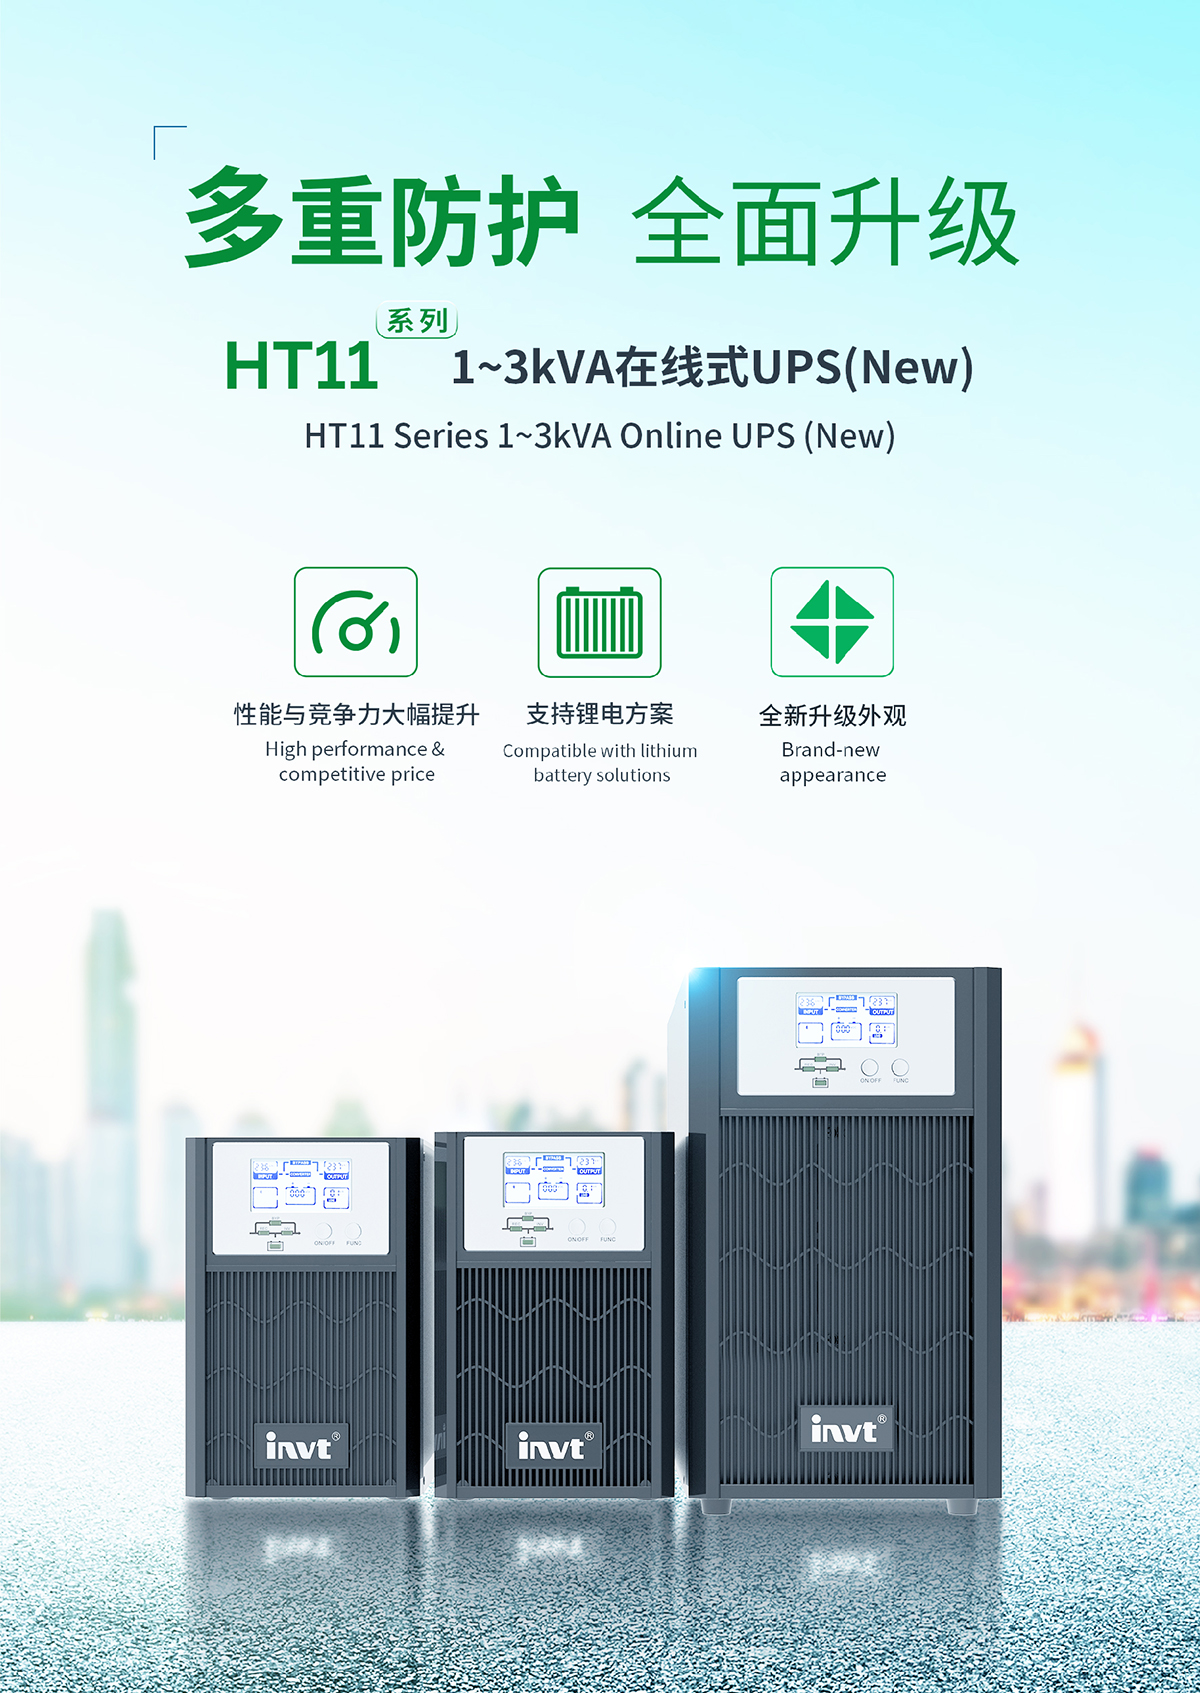 多重防护 全面升级 | 全新HT11系列1-3kVA在线式UPS解决方案隆重上市